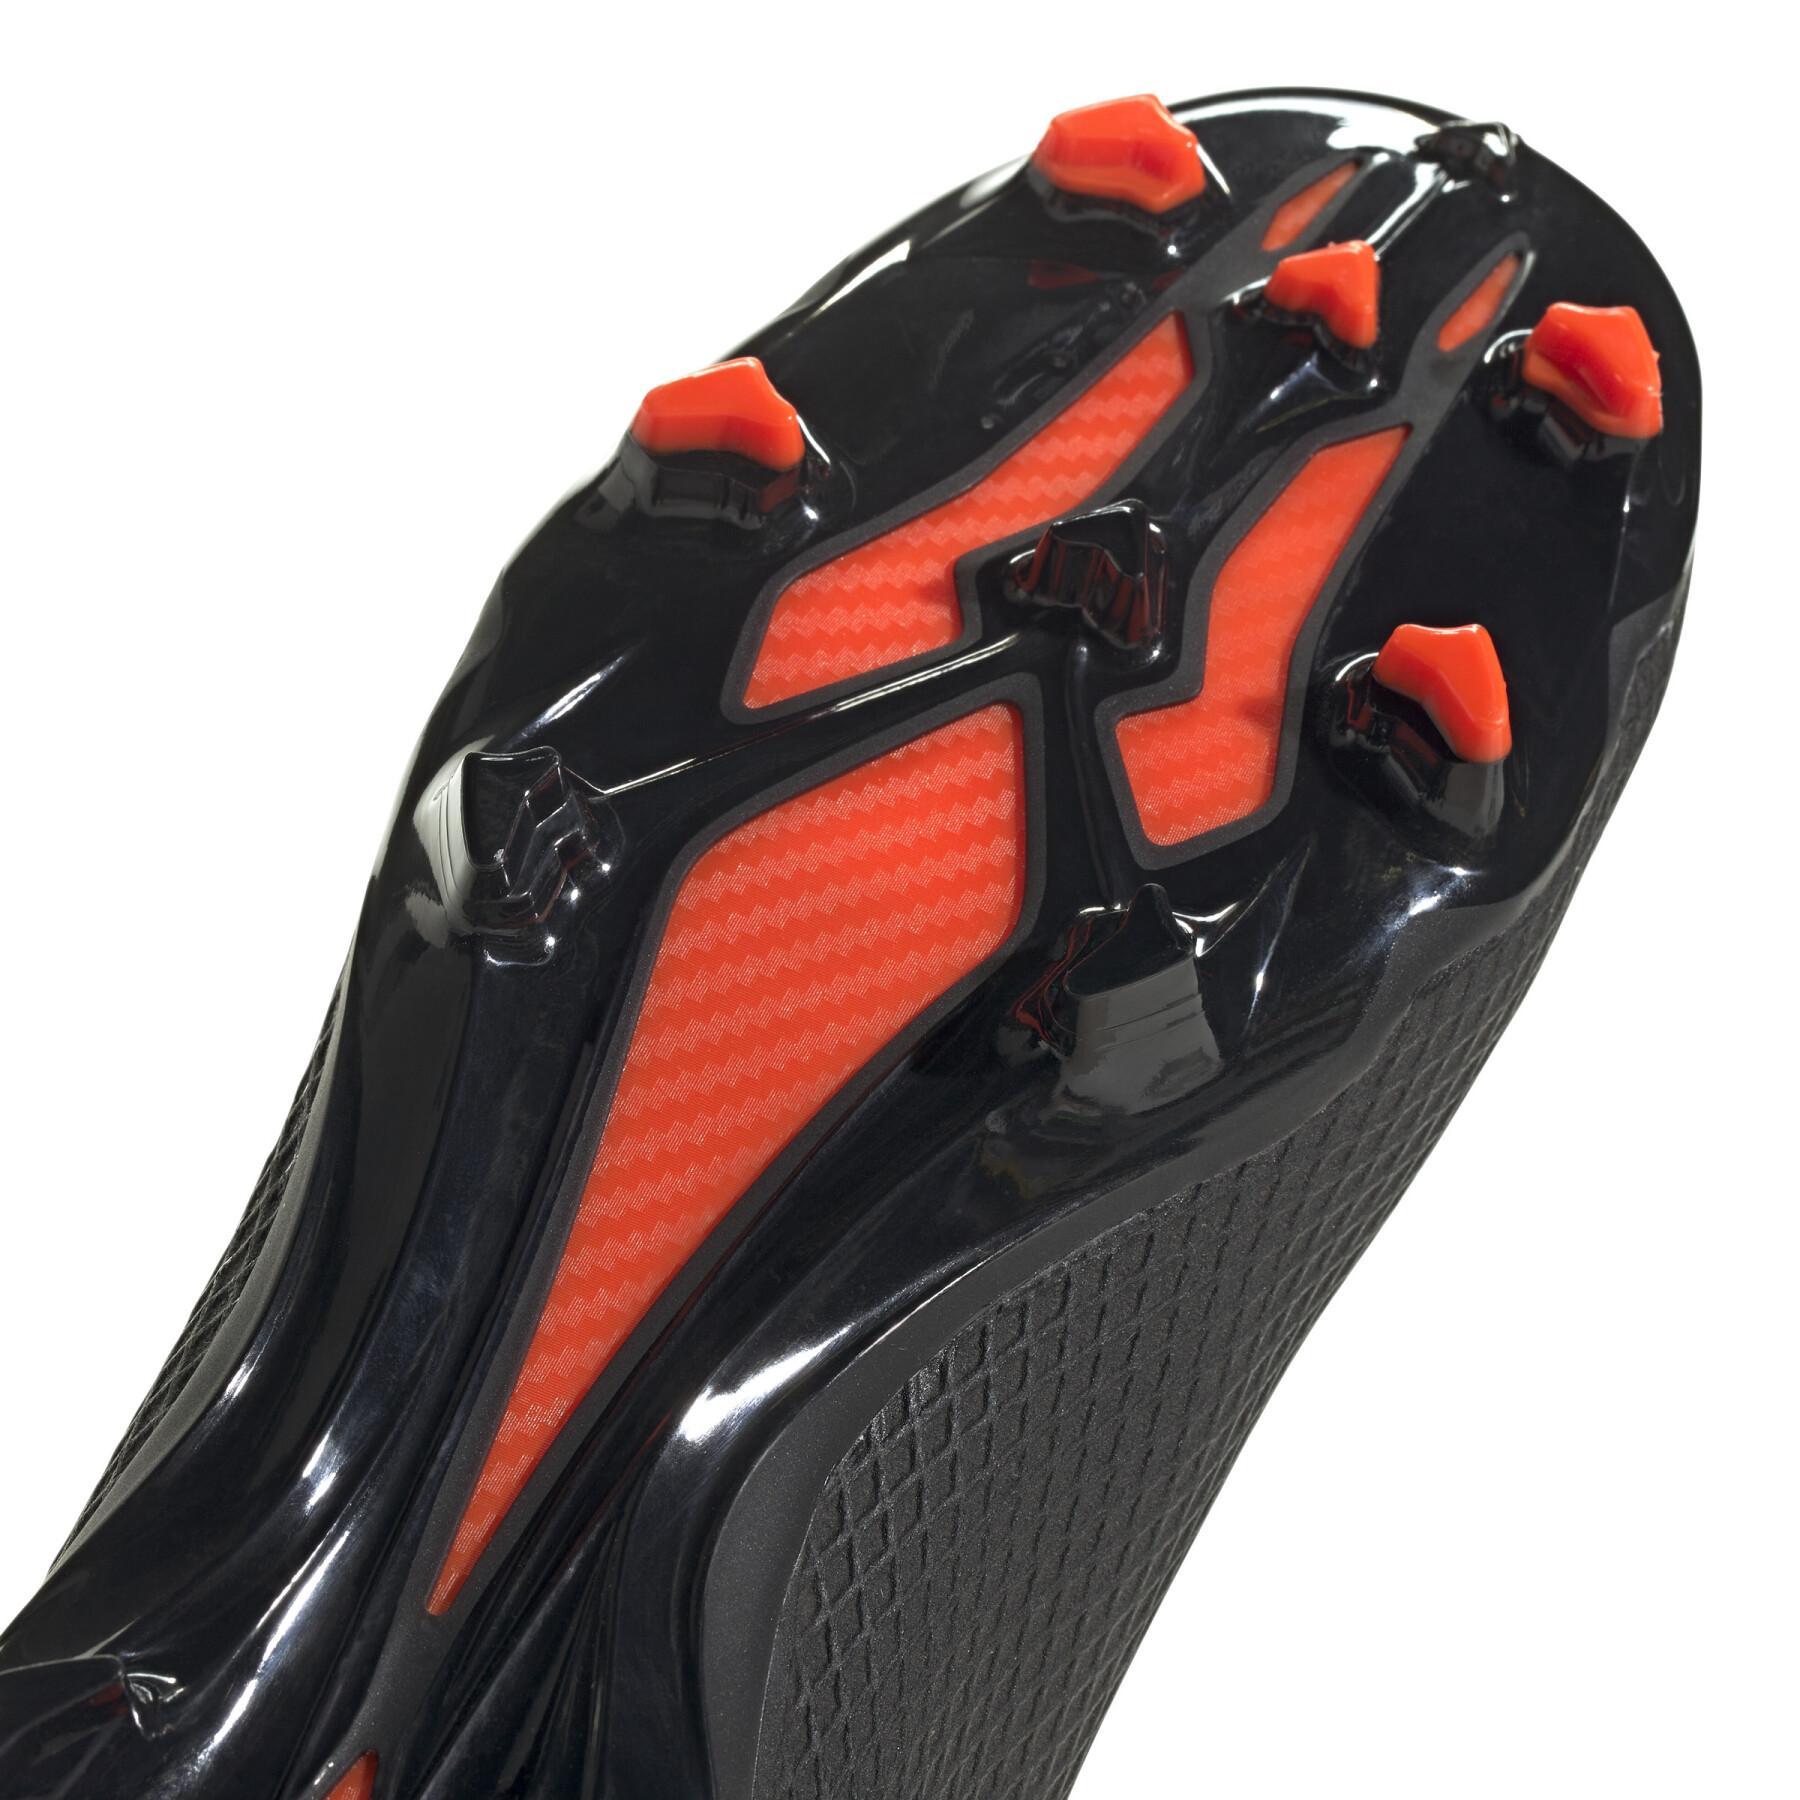 Chaussures de football adidas X Speedportal.3 Laceless FG - Shadowportal Pack